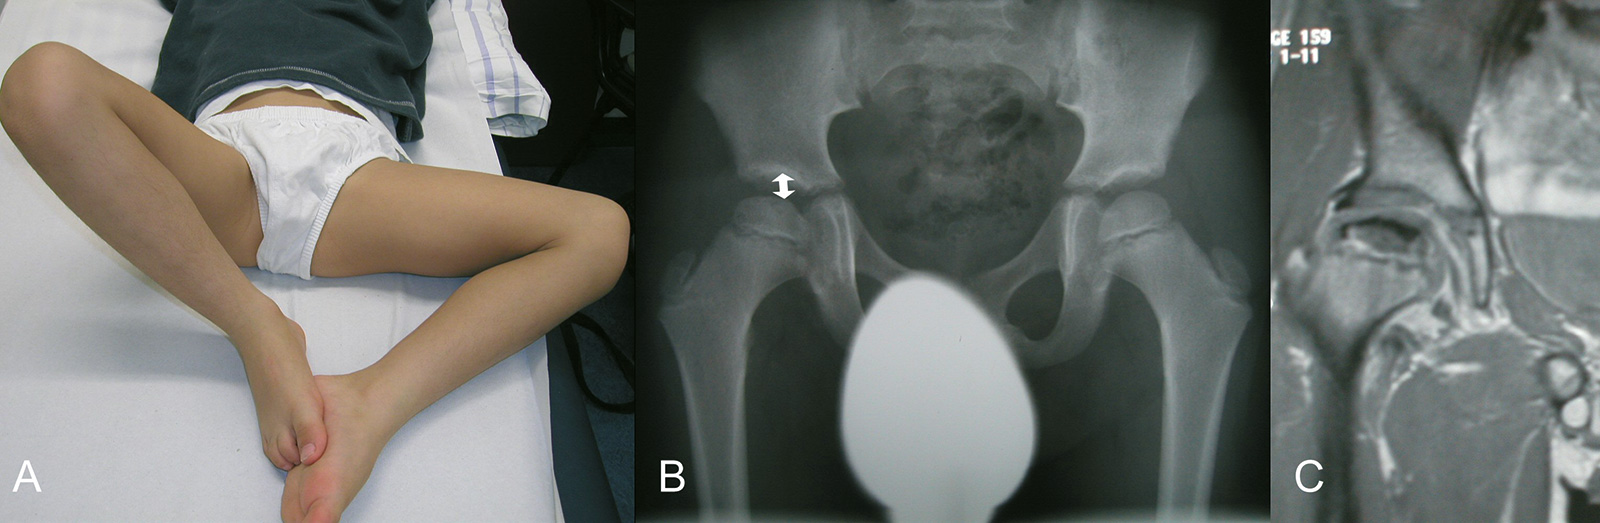 Abb. 4-14: Zu den initialen Zeichen gehört eine Einschränkung der Abduktion (positives Viererzeichen) (A), eine Verbreiterung des Gelenkspaltes im Röntgenbild (B) und typische Veränderungen im MRT (C)